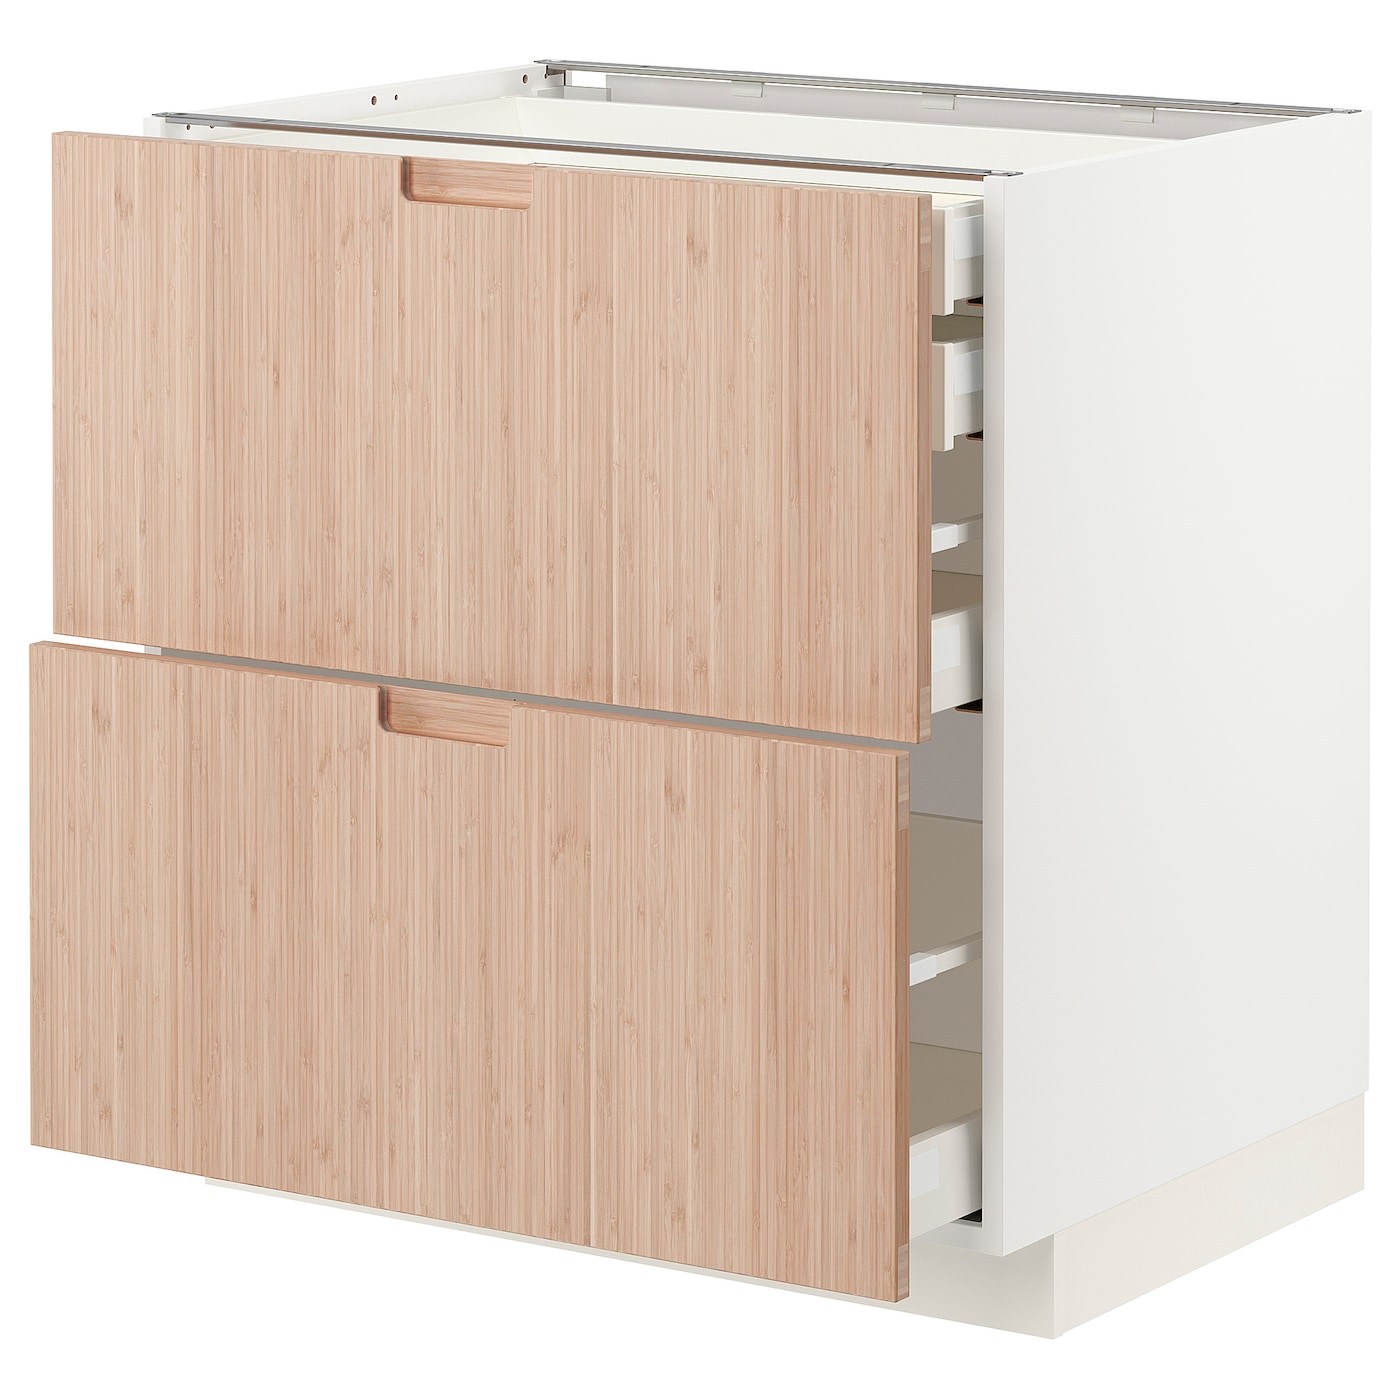 Напольный шкаф  - IKEA METOD MAXIMERA, 88x61,6x80см, белый/светло-коричневый, МЕТОД МАКСИМЕРА ИКЕА